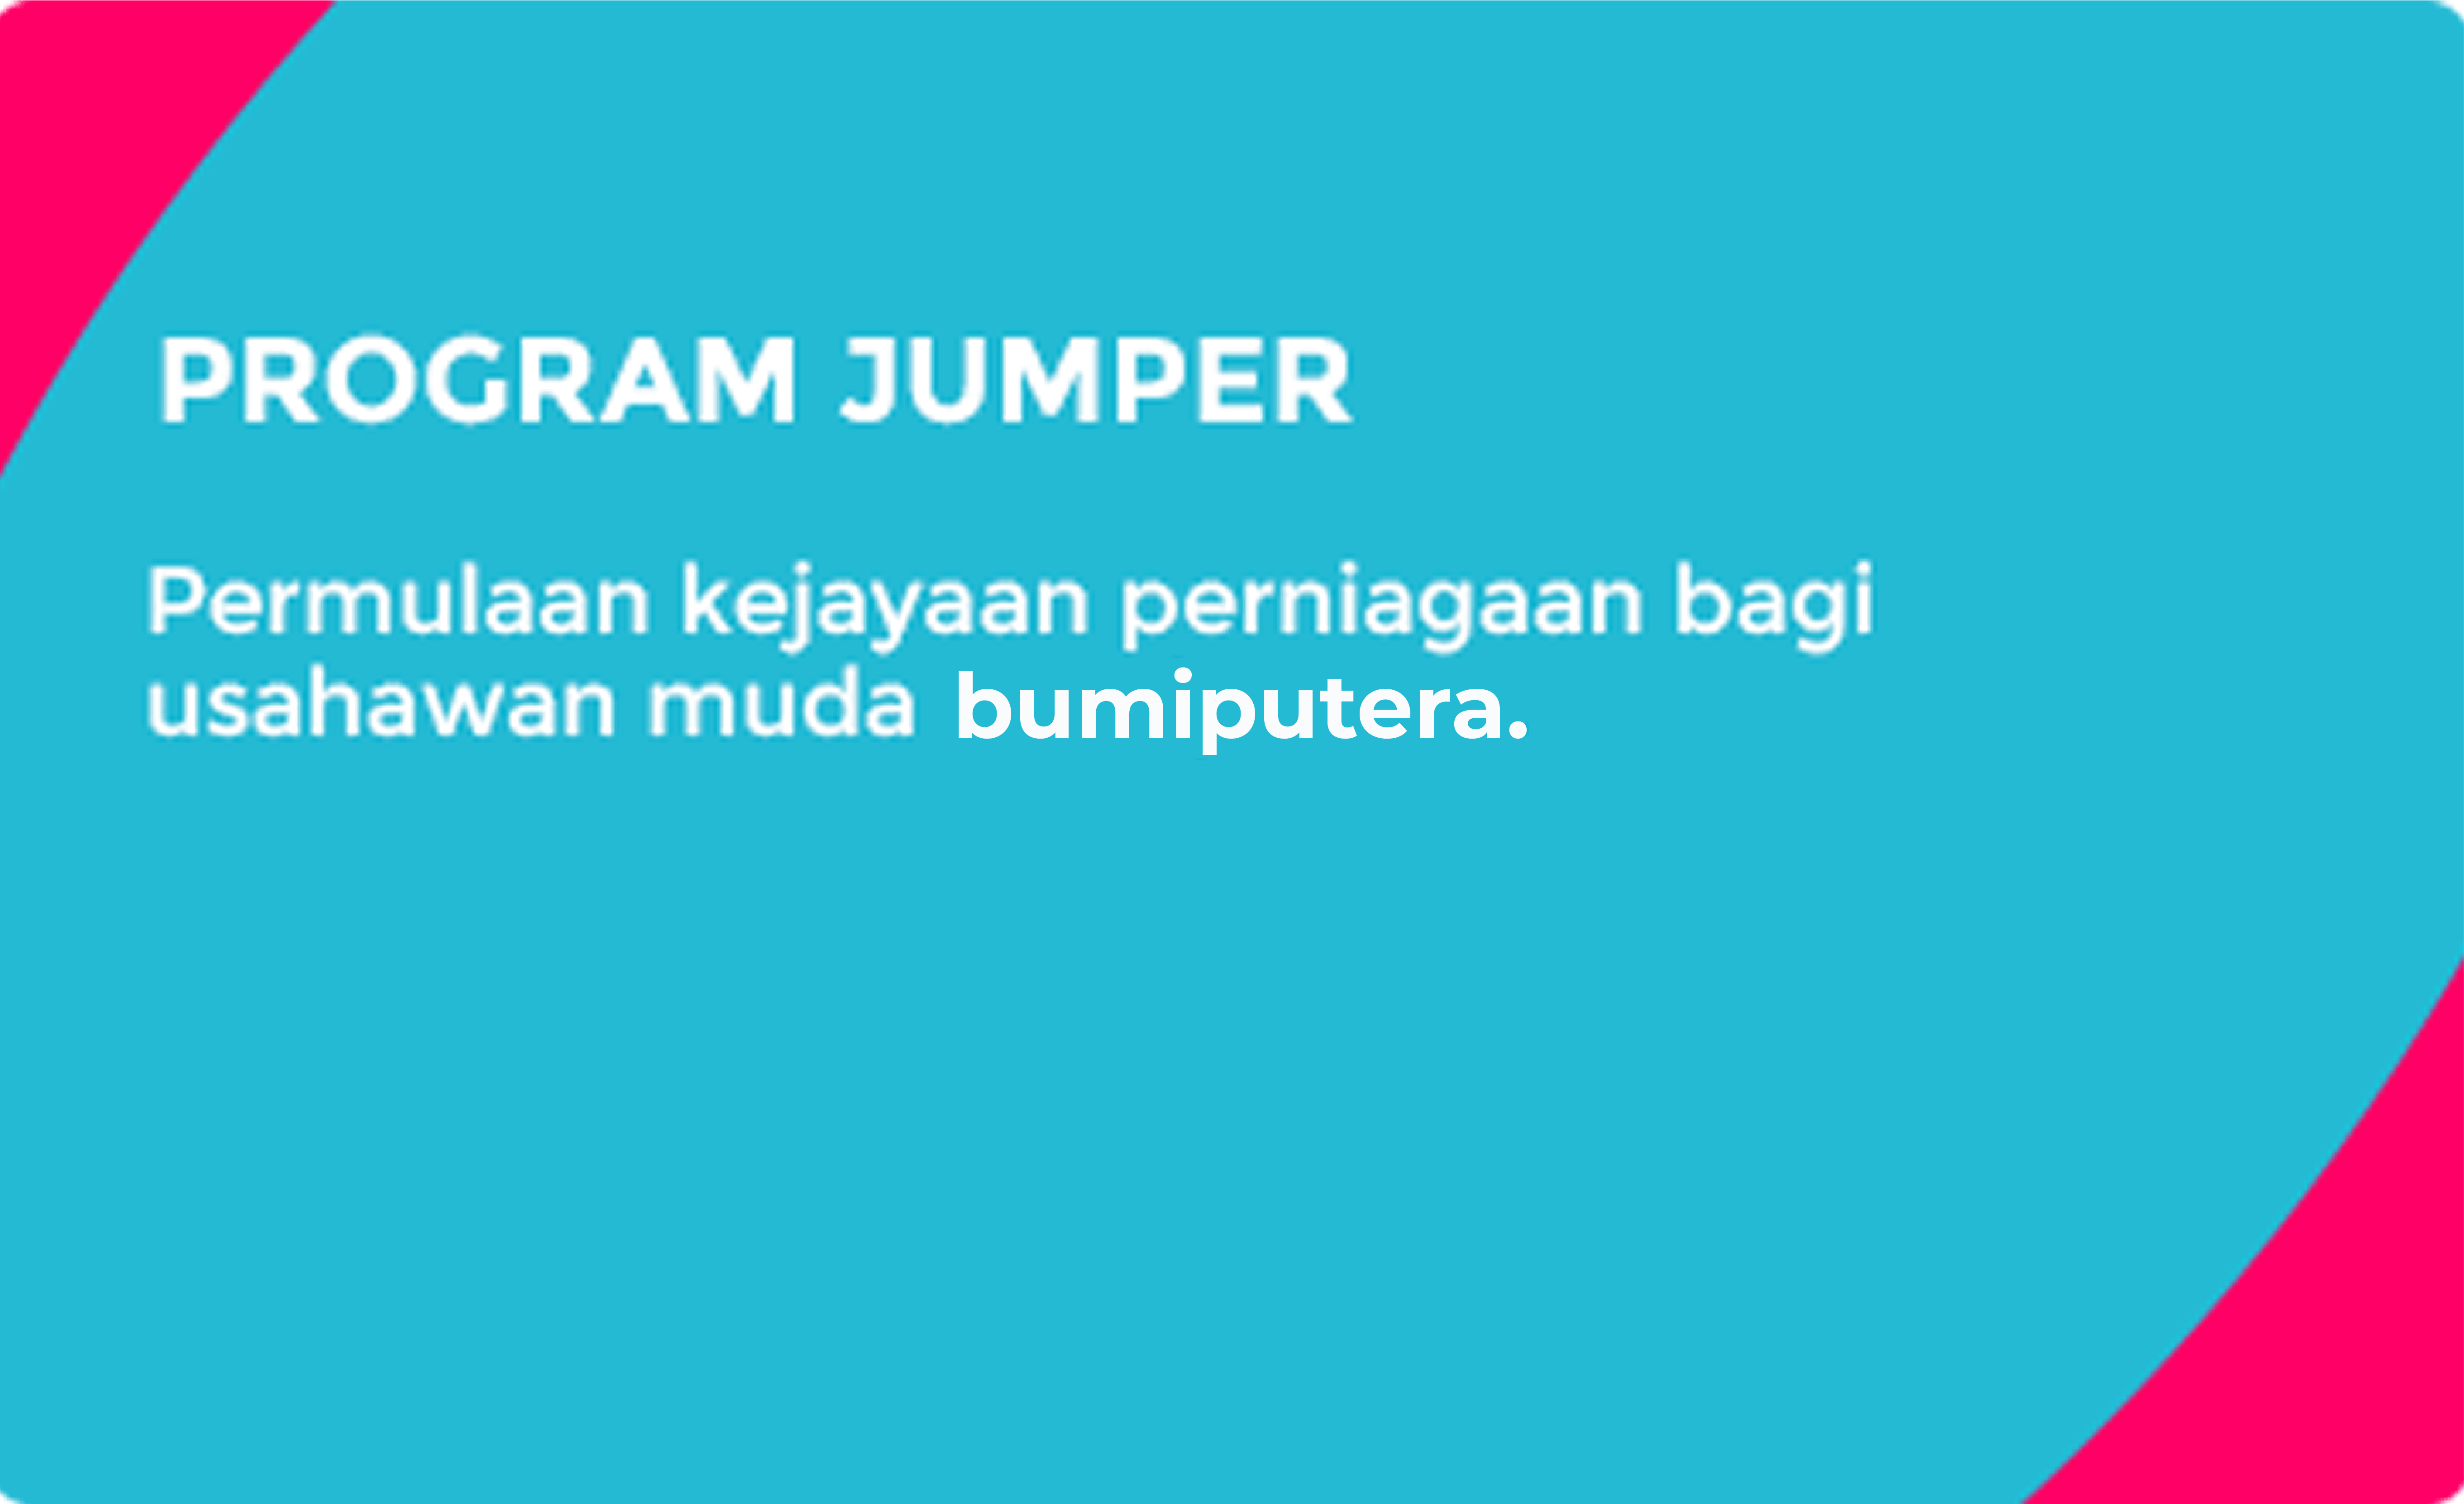 PROGRAM JUMPER